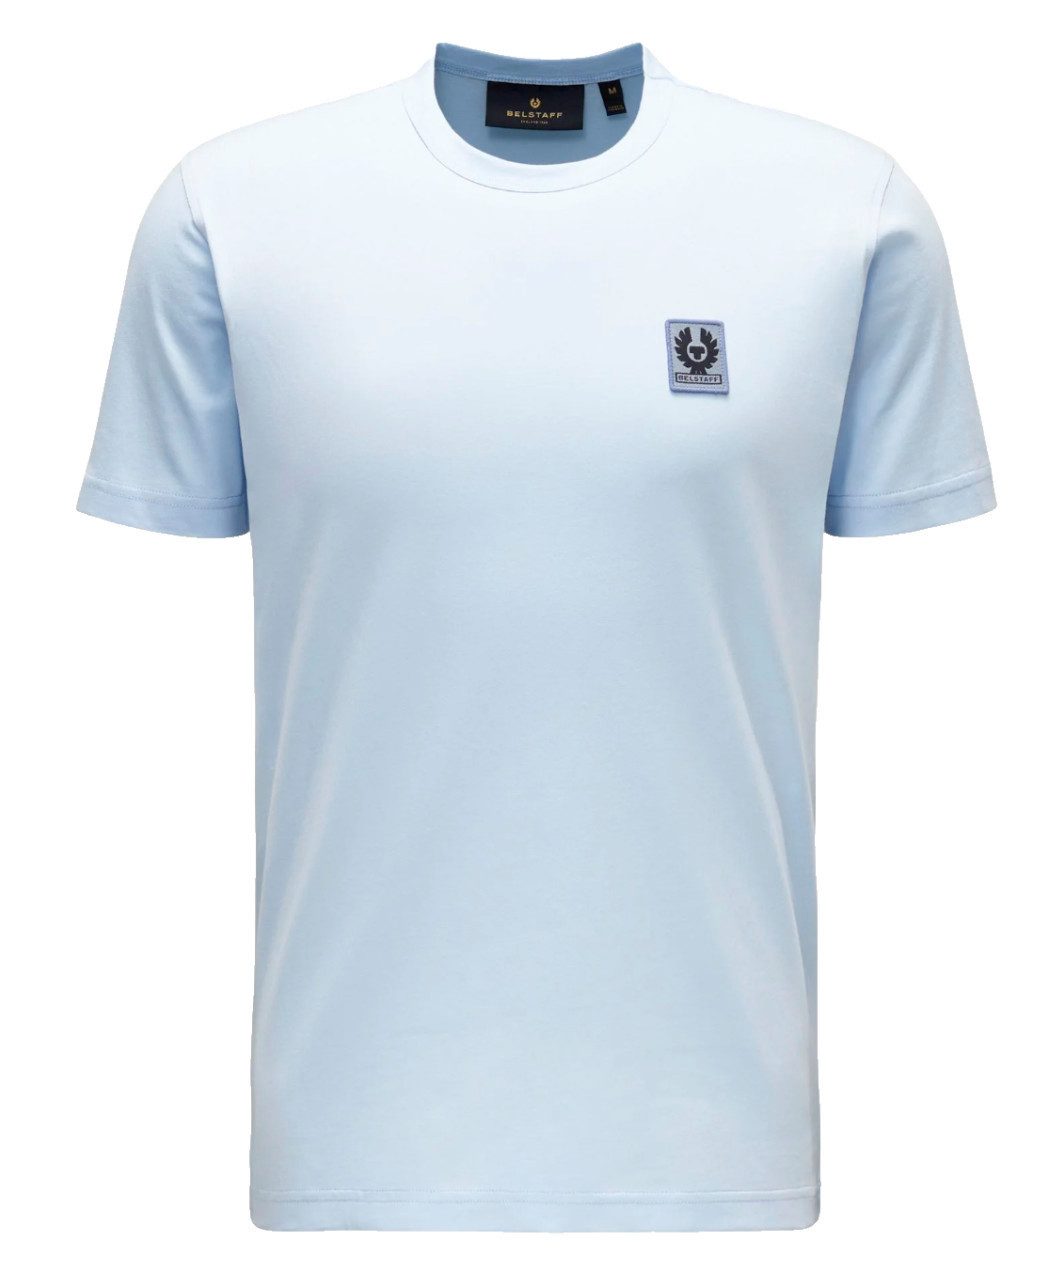 Belstaff T-Shirt T-Shirt England 1924 Phoenix Logo Retro Tee Regular Fit Shirt